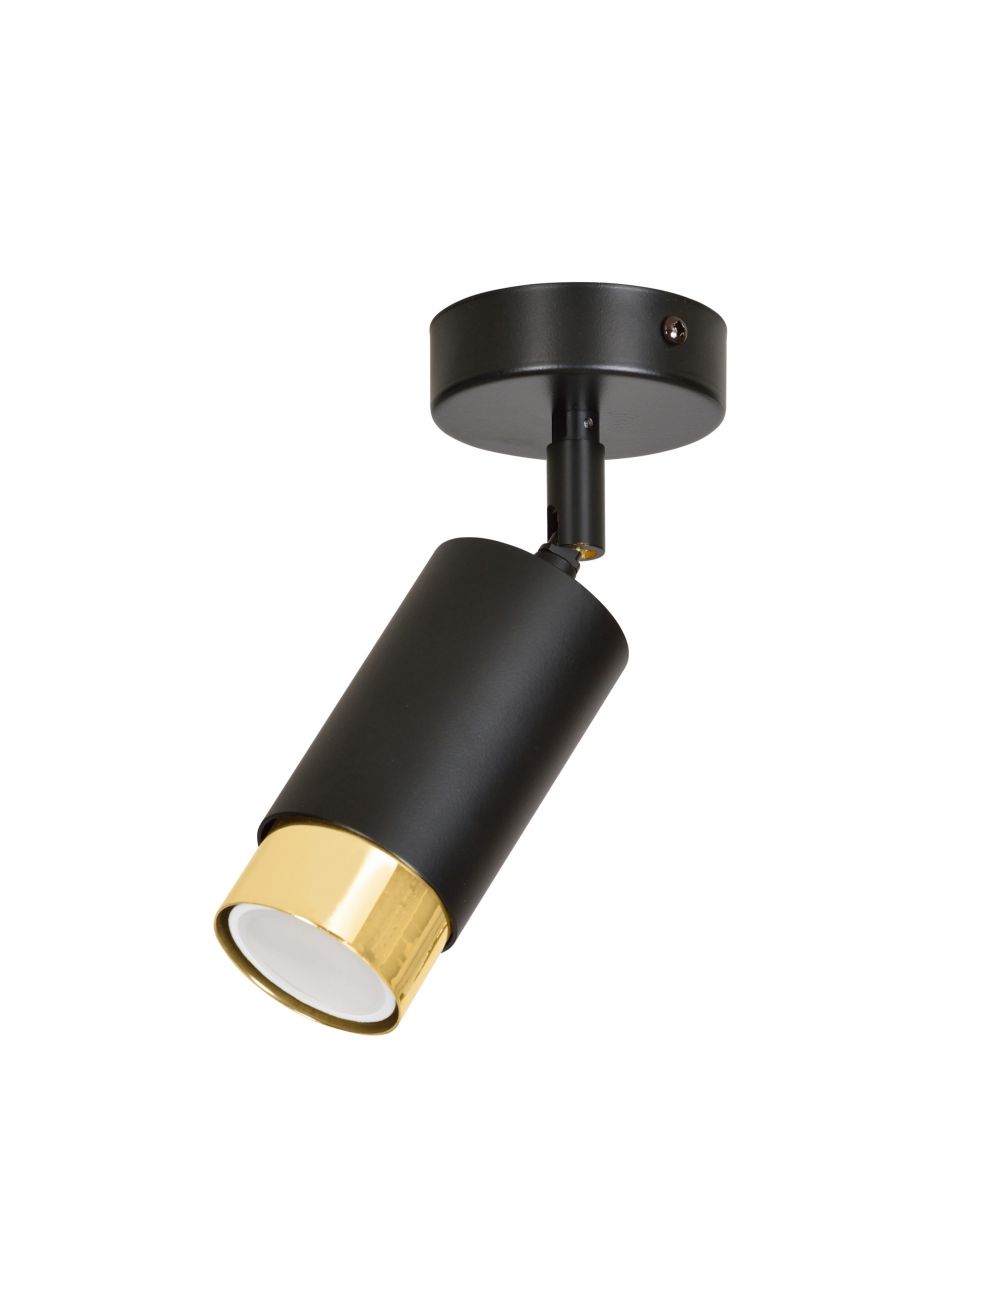 HIRO 1 BLACK-GOLD 965/1 nowoczesny regulowany spot LED sufitowy czarno złoty EMIBIG